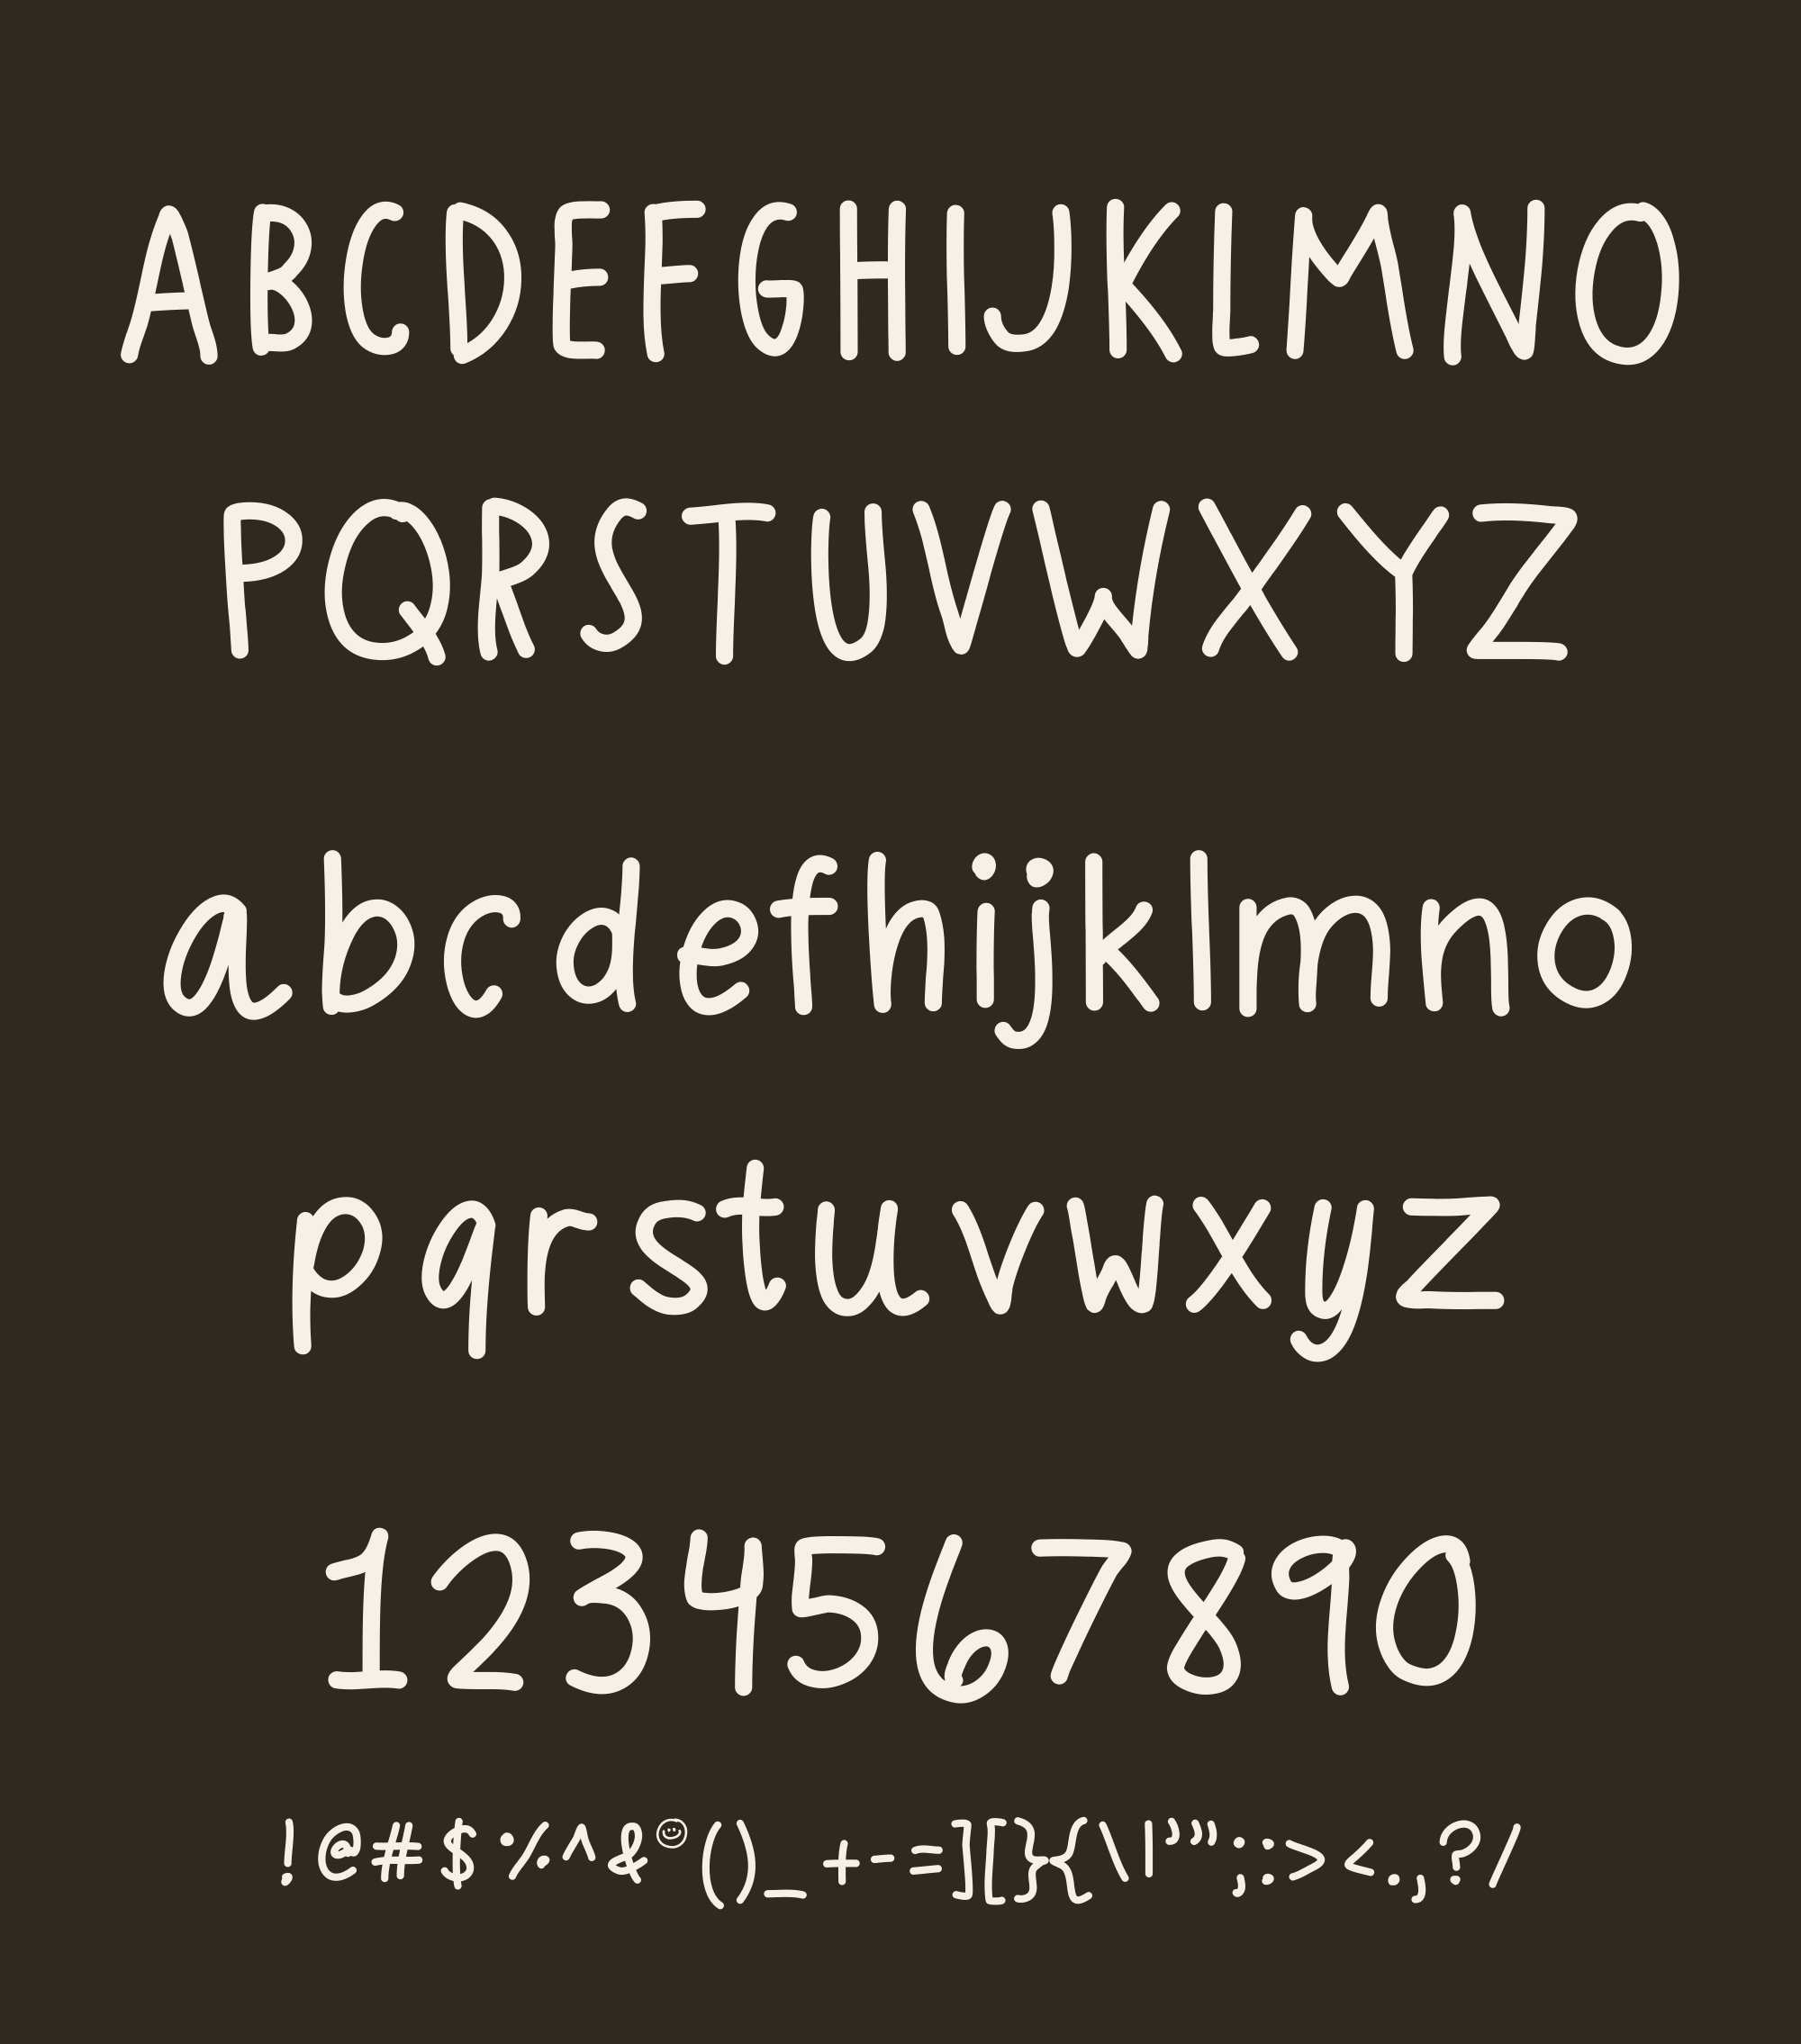 Poppi Handwritten Font